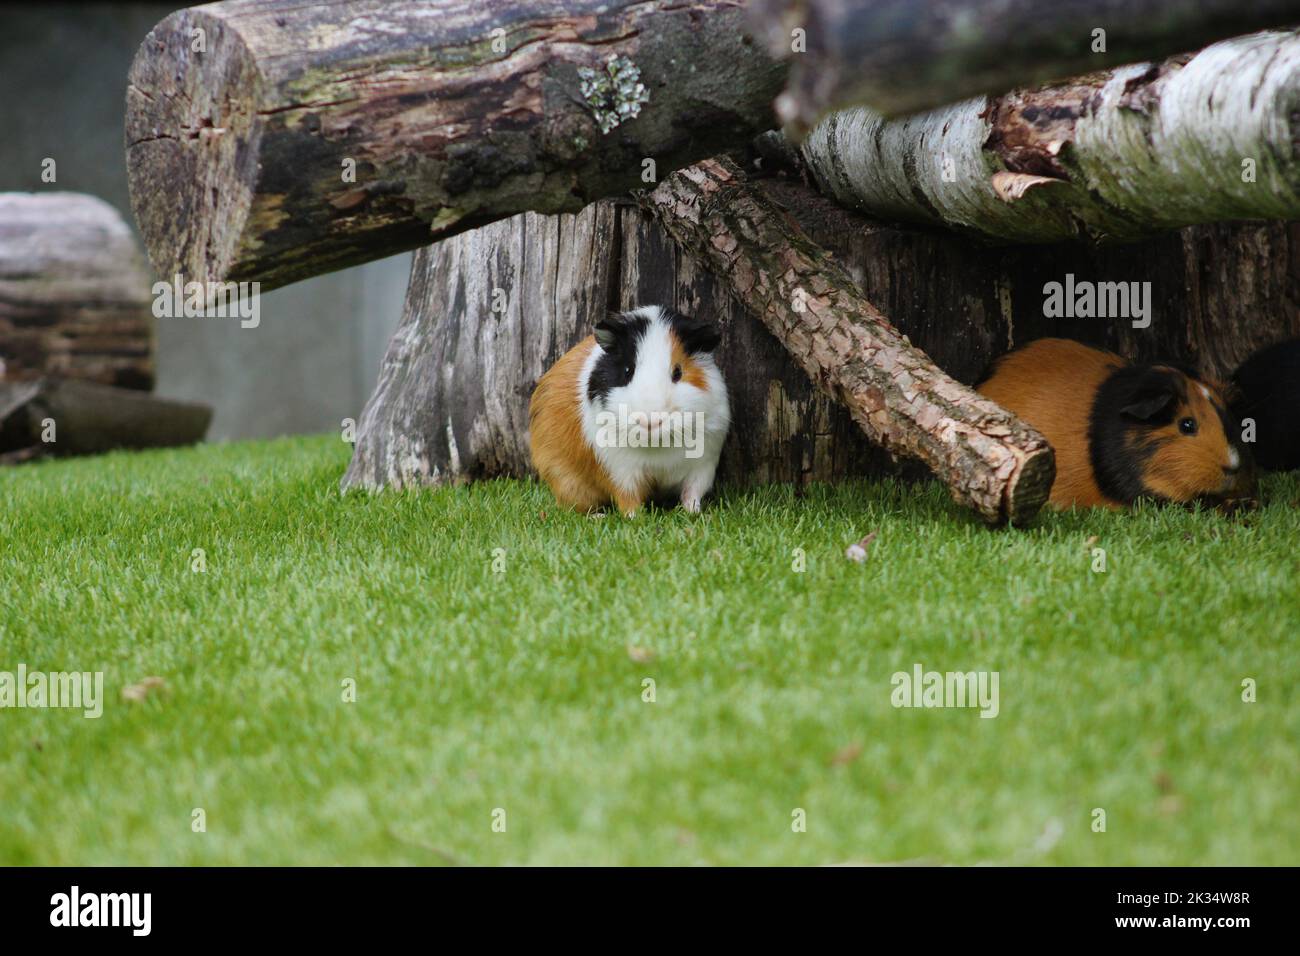 Meerschweinchen im Freigehege sitzen versteckt unter Baumstämmen im grünen Gras Foto de stock